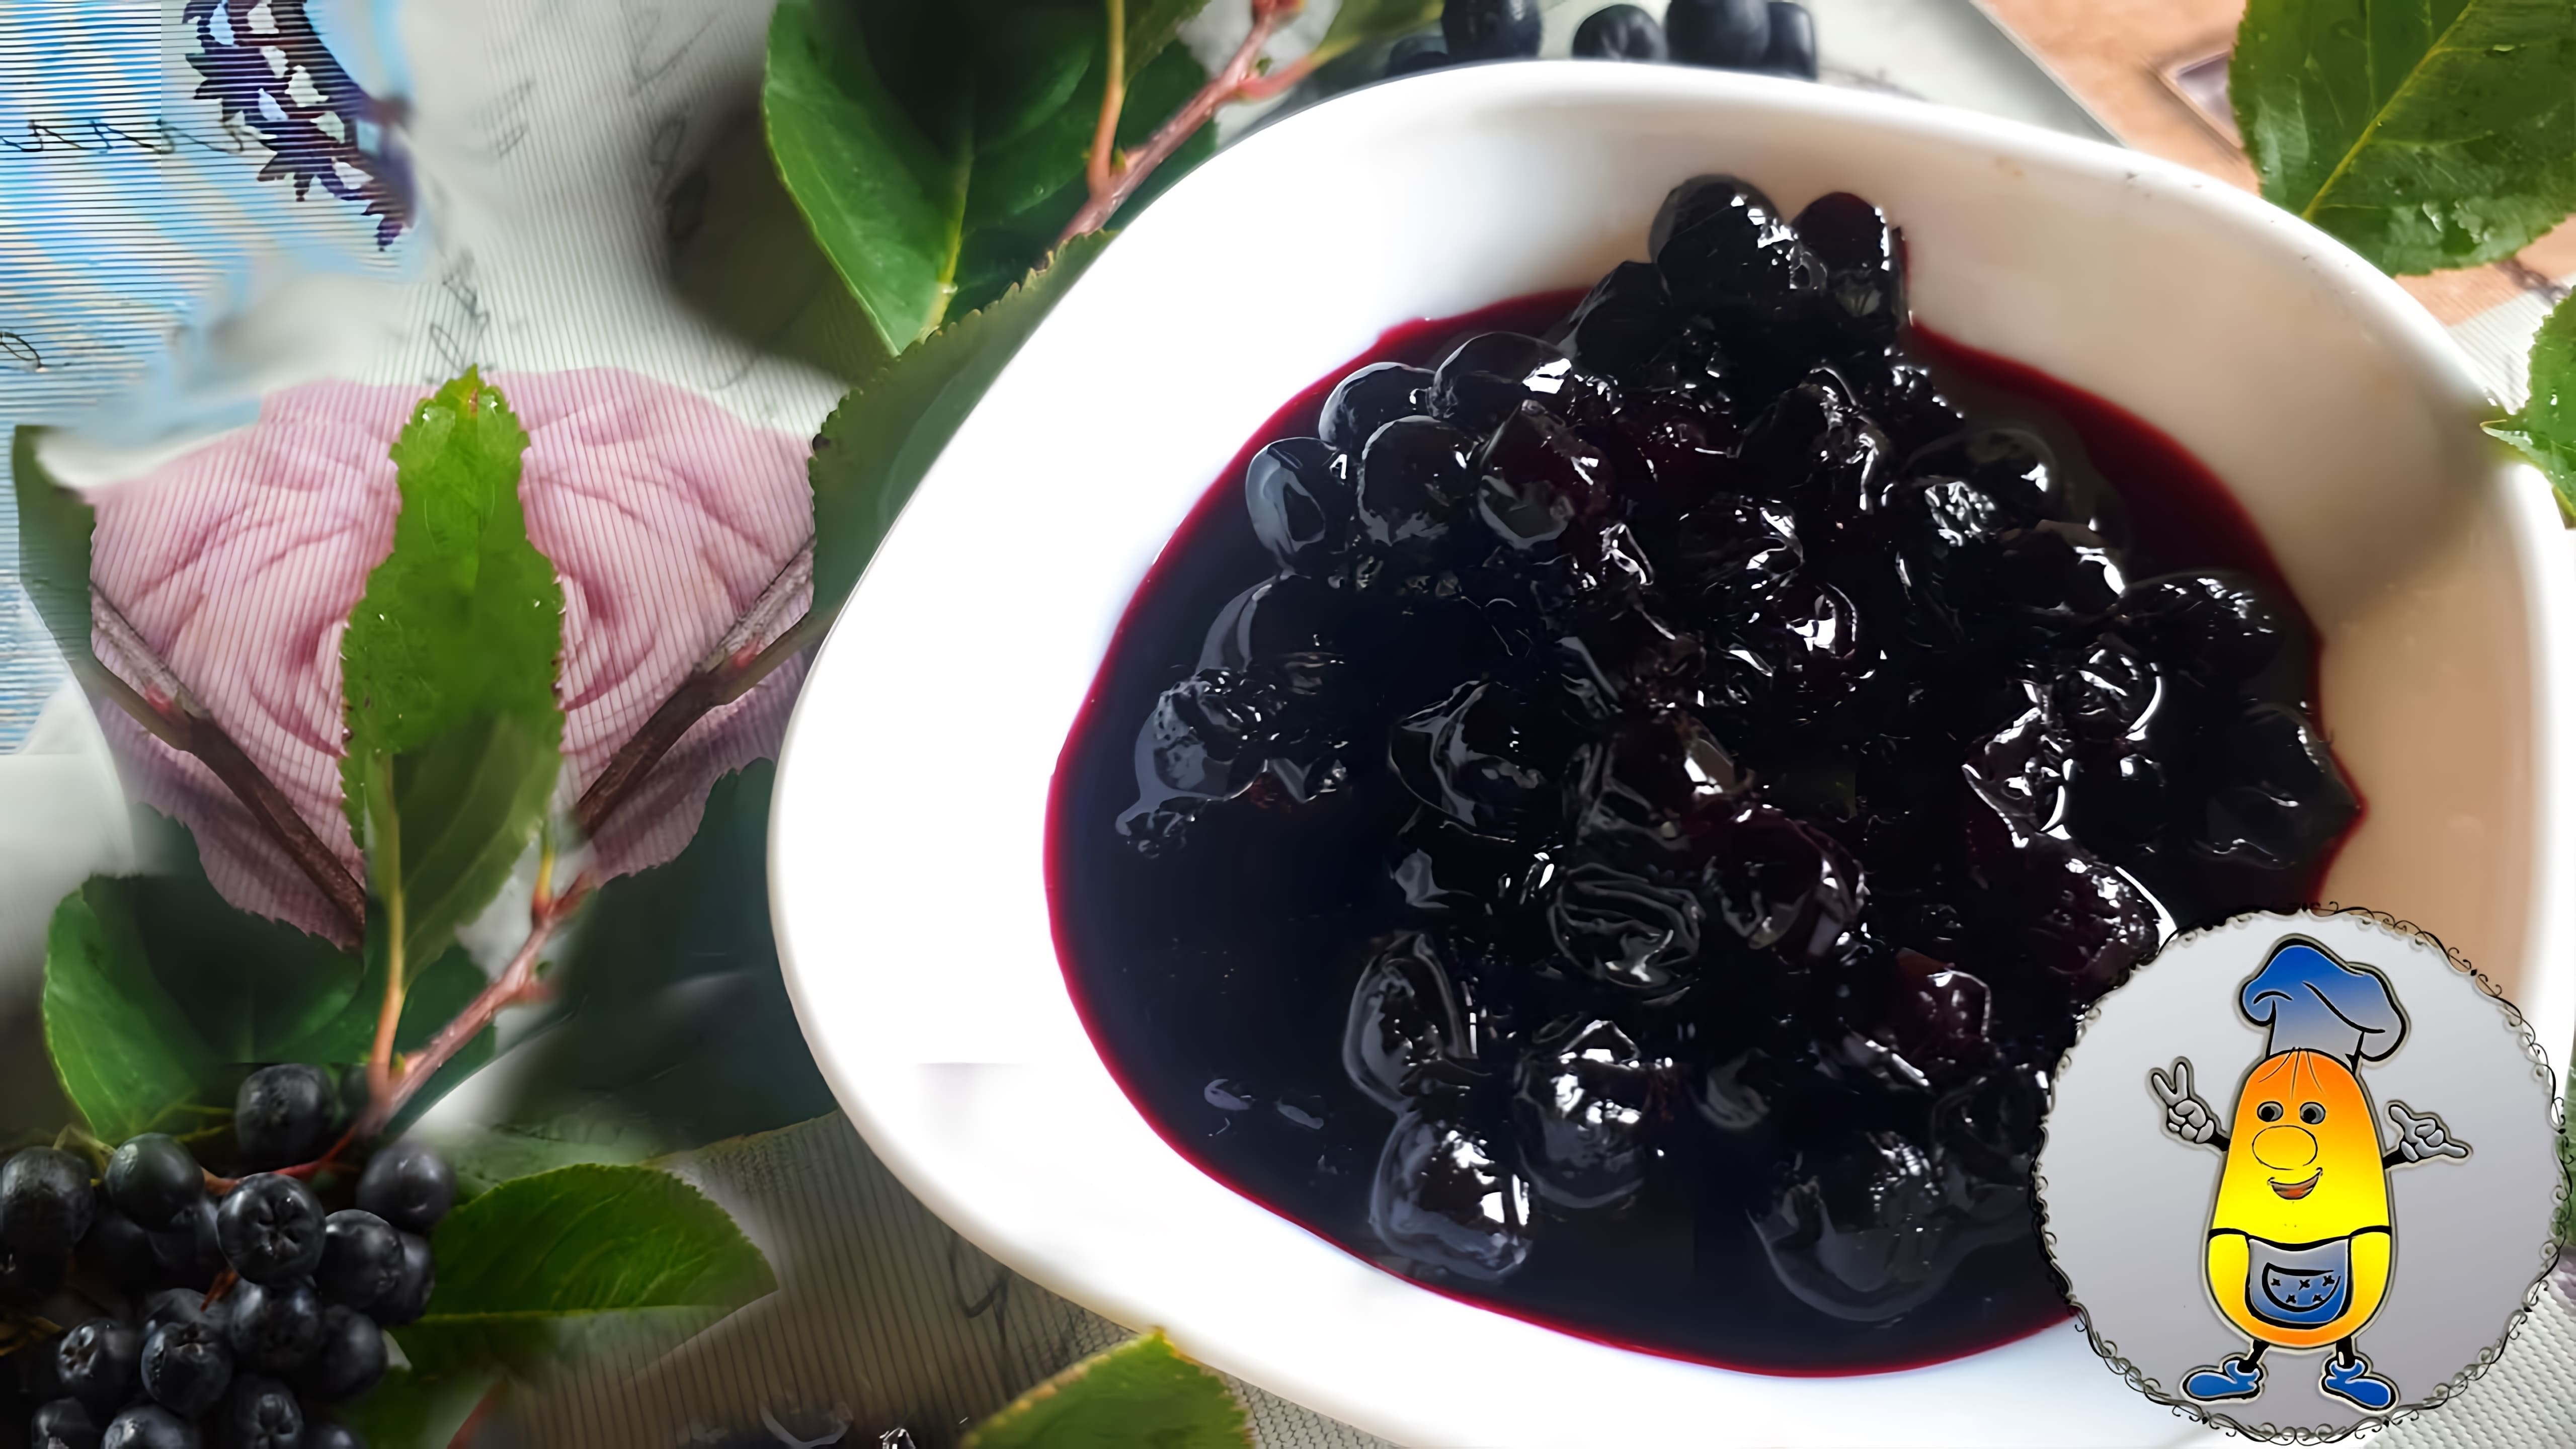 Видео рецепт приготовления варенья из ягод аронии без добавления воды